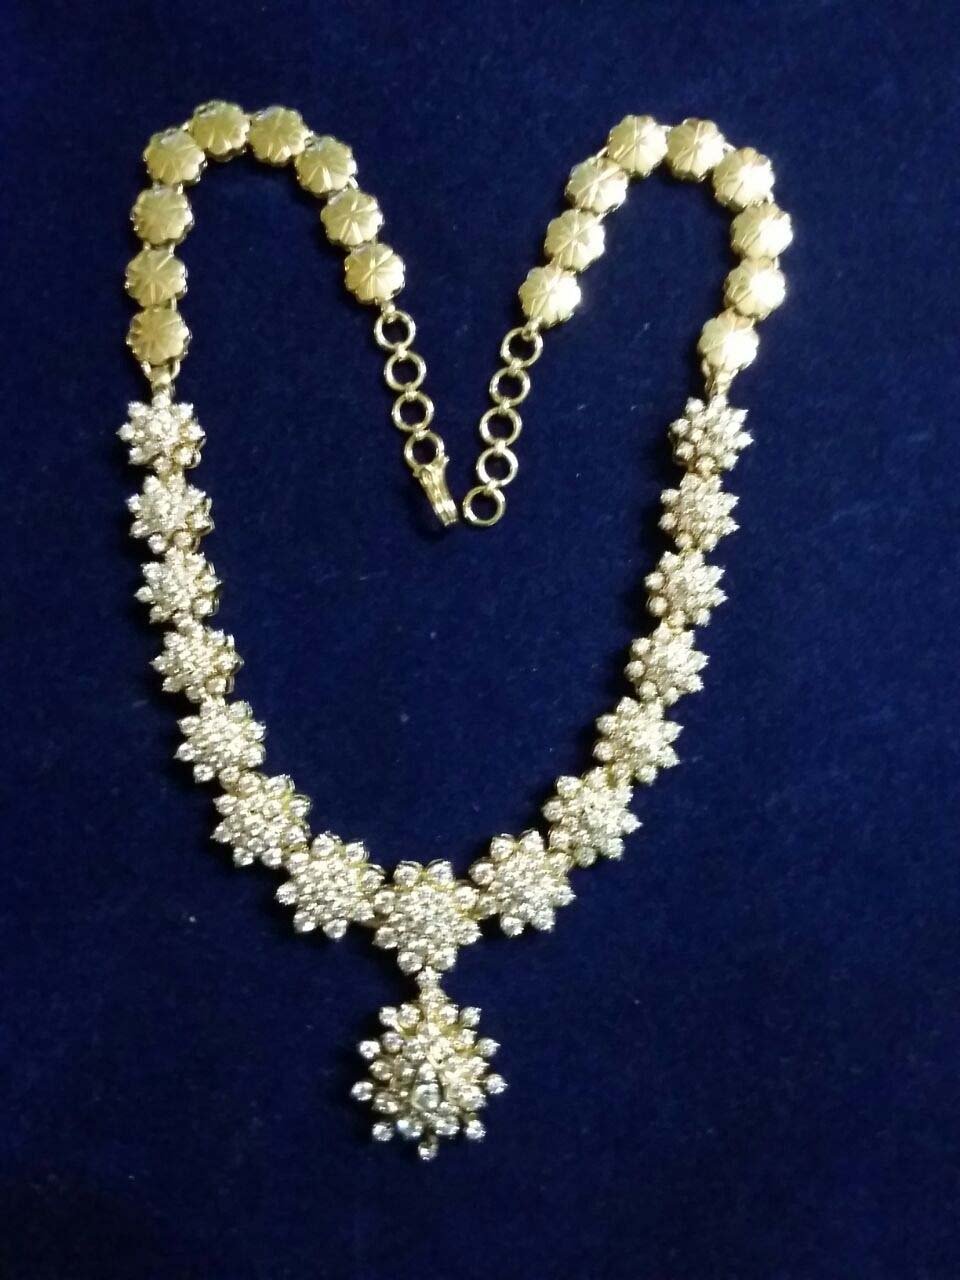 Chettinad Diamond Jewelry – Thaneermalai Diamonds